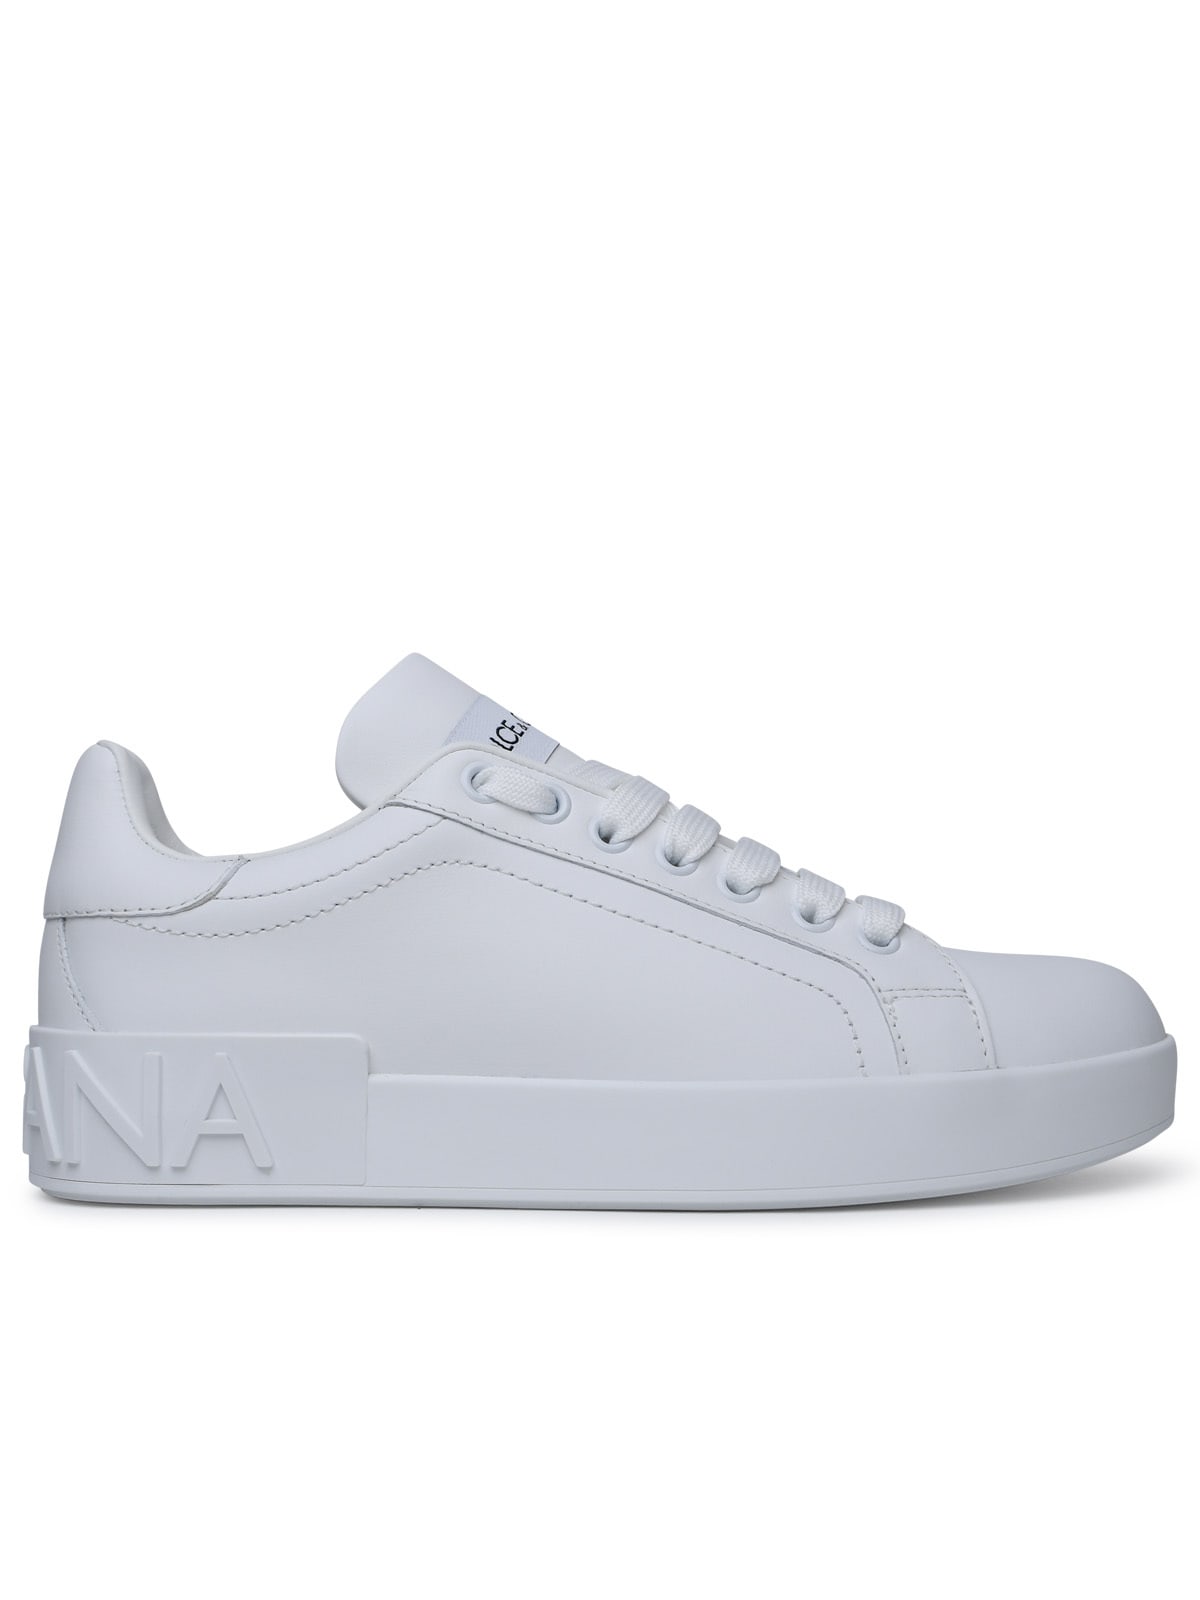 Dolce & Gabbana Portofino White Calf Leather Sneakers